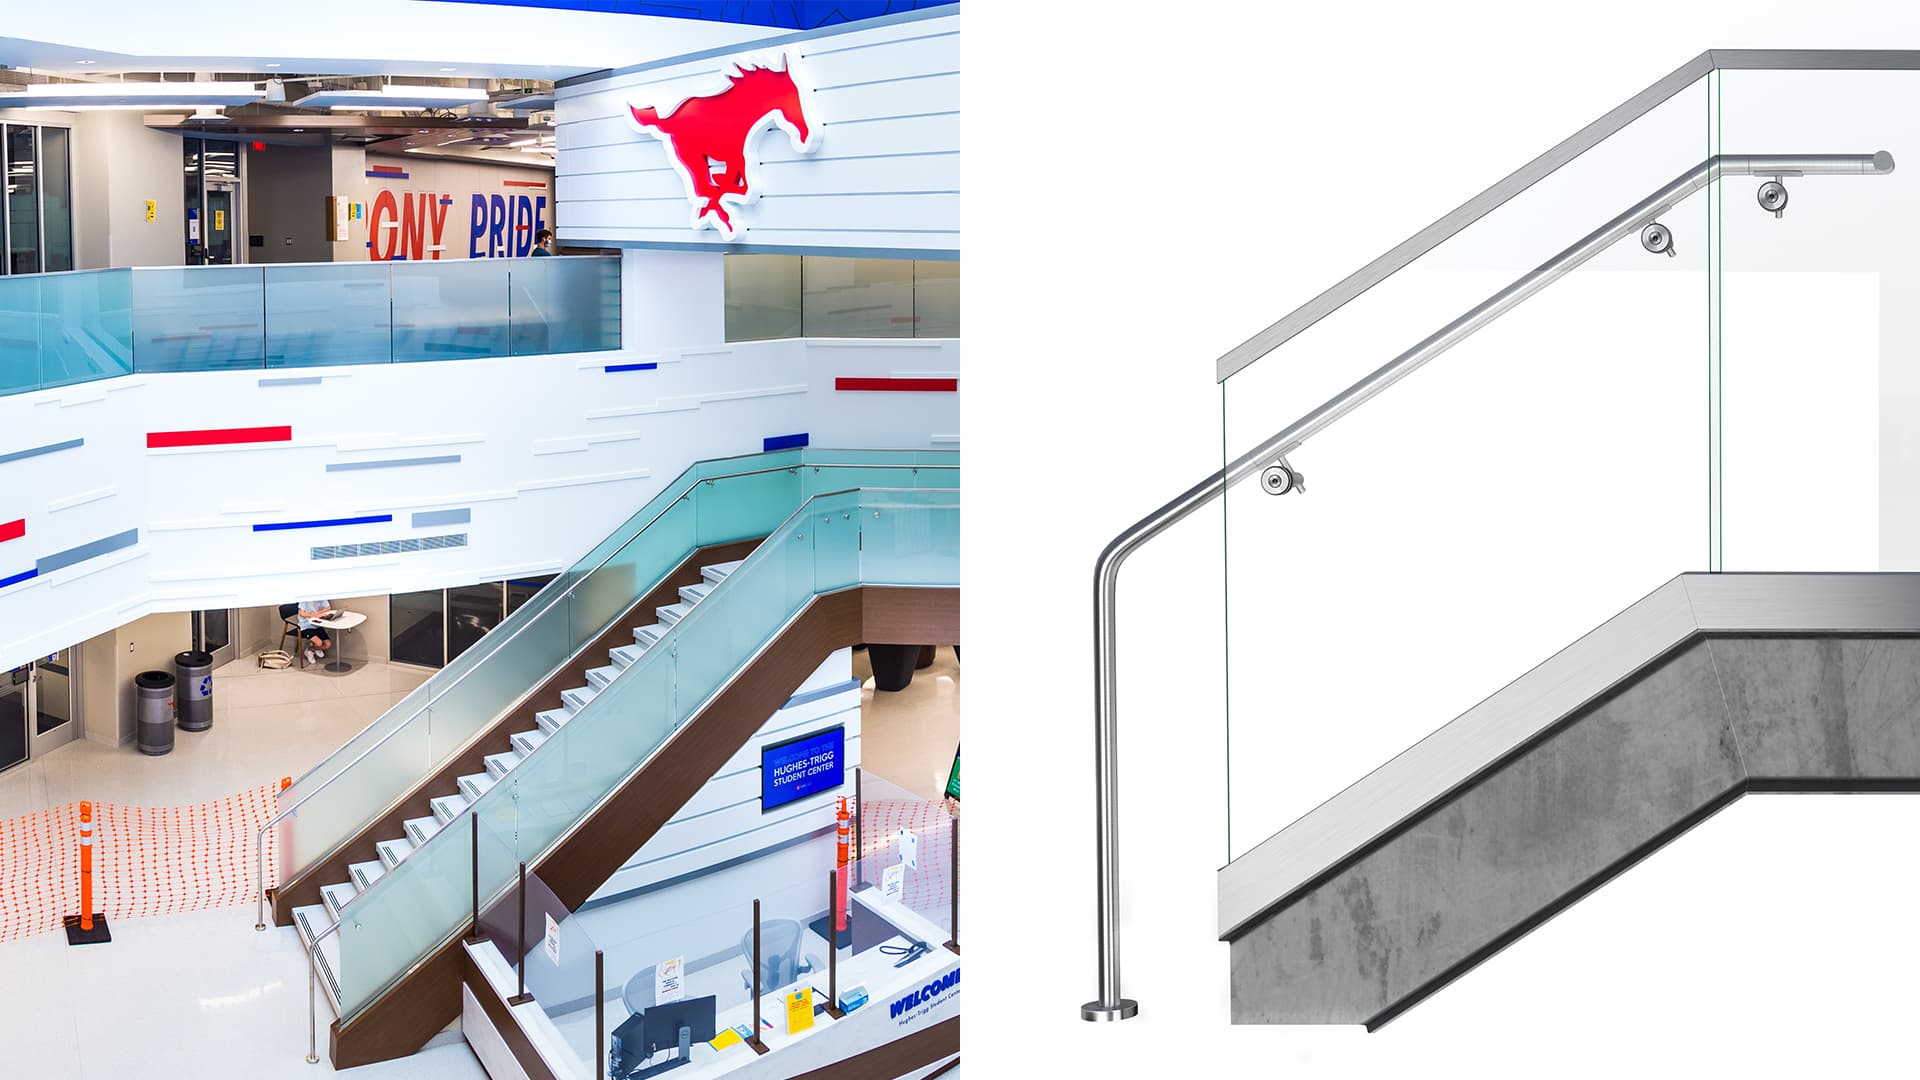 Shoe glass railing system smu hughes trigg student center